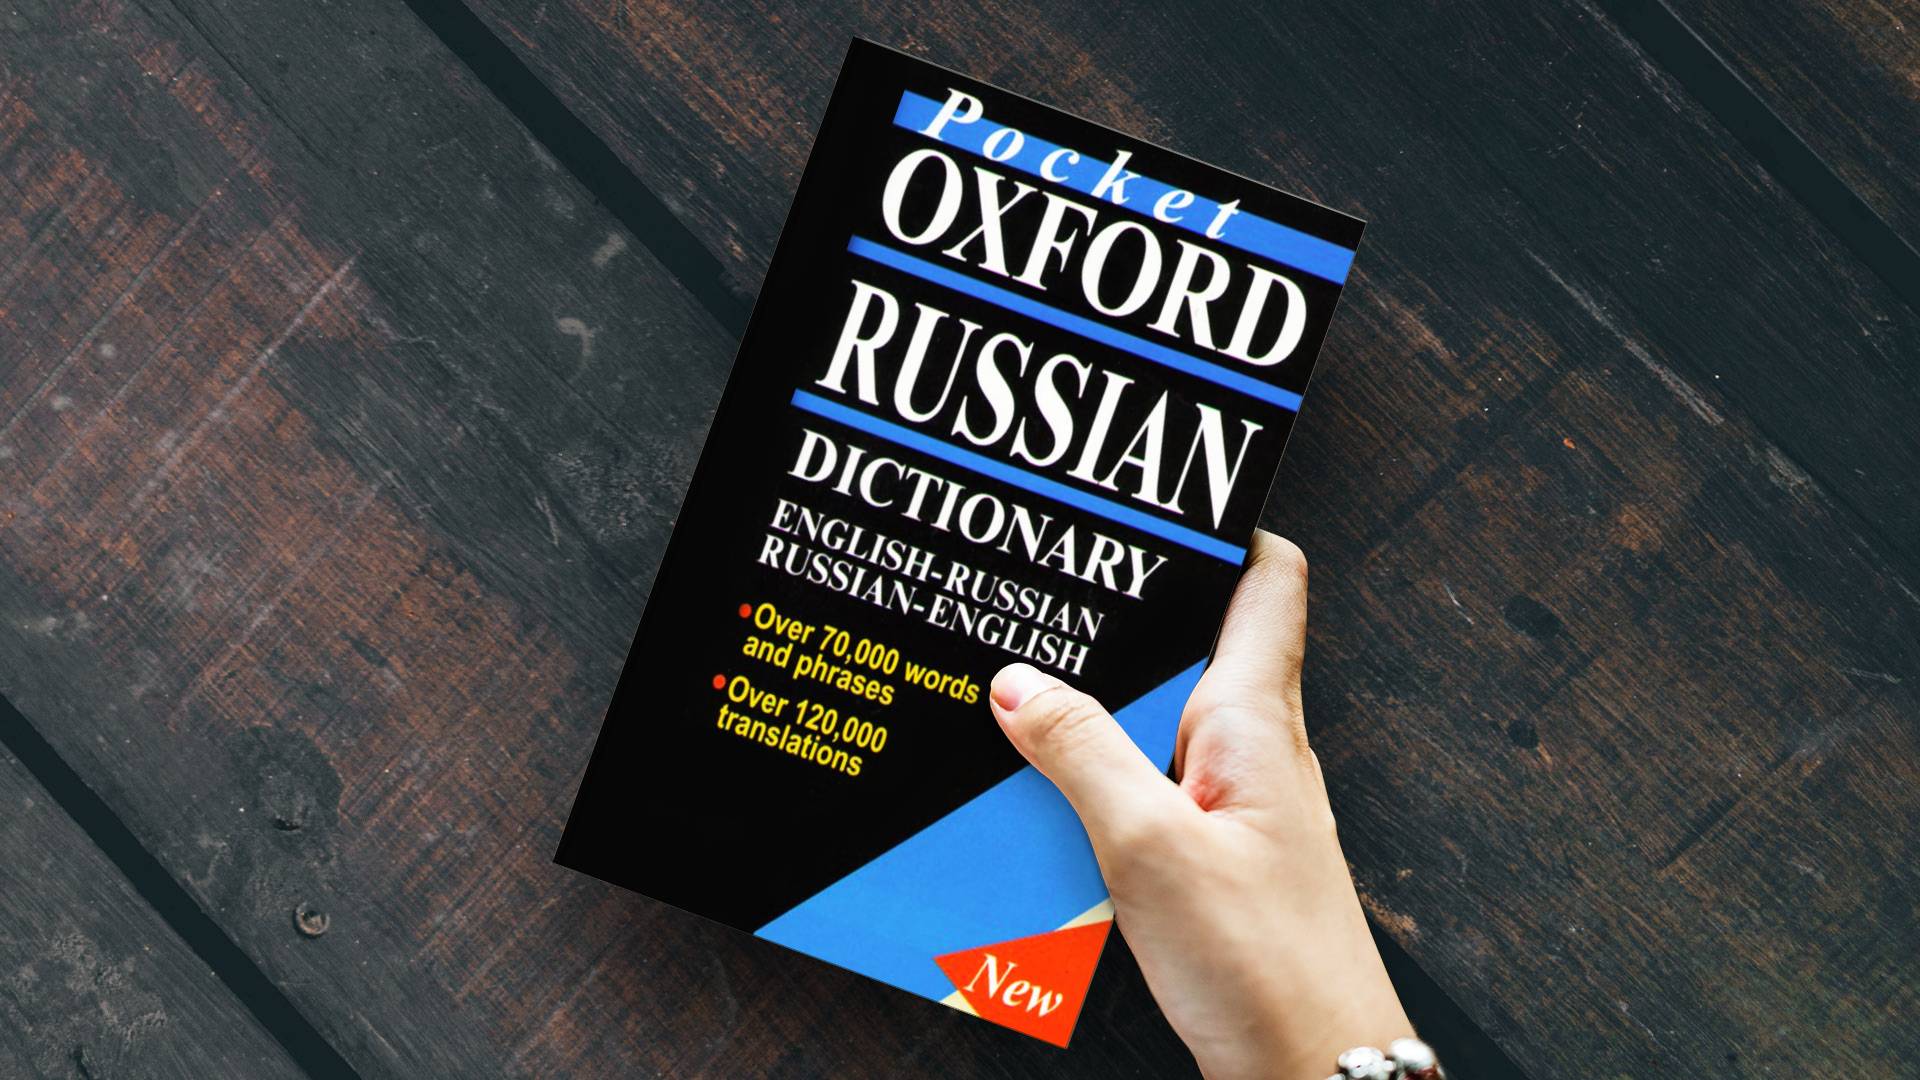 خرید دیکشنری پاکت اکسفورد راشن دوسویه انگلیسی روسی | فرهنگ لغت زبان روسی | Pocket Oxford Russian Dictionary